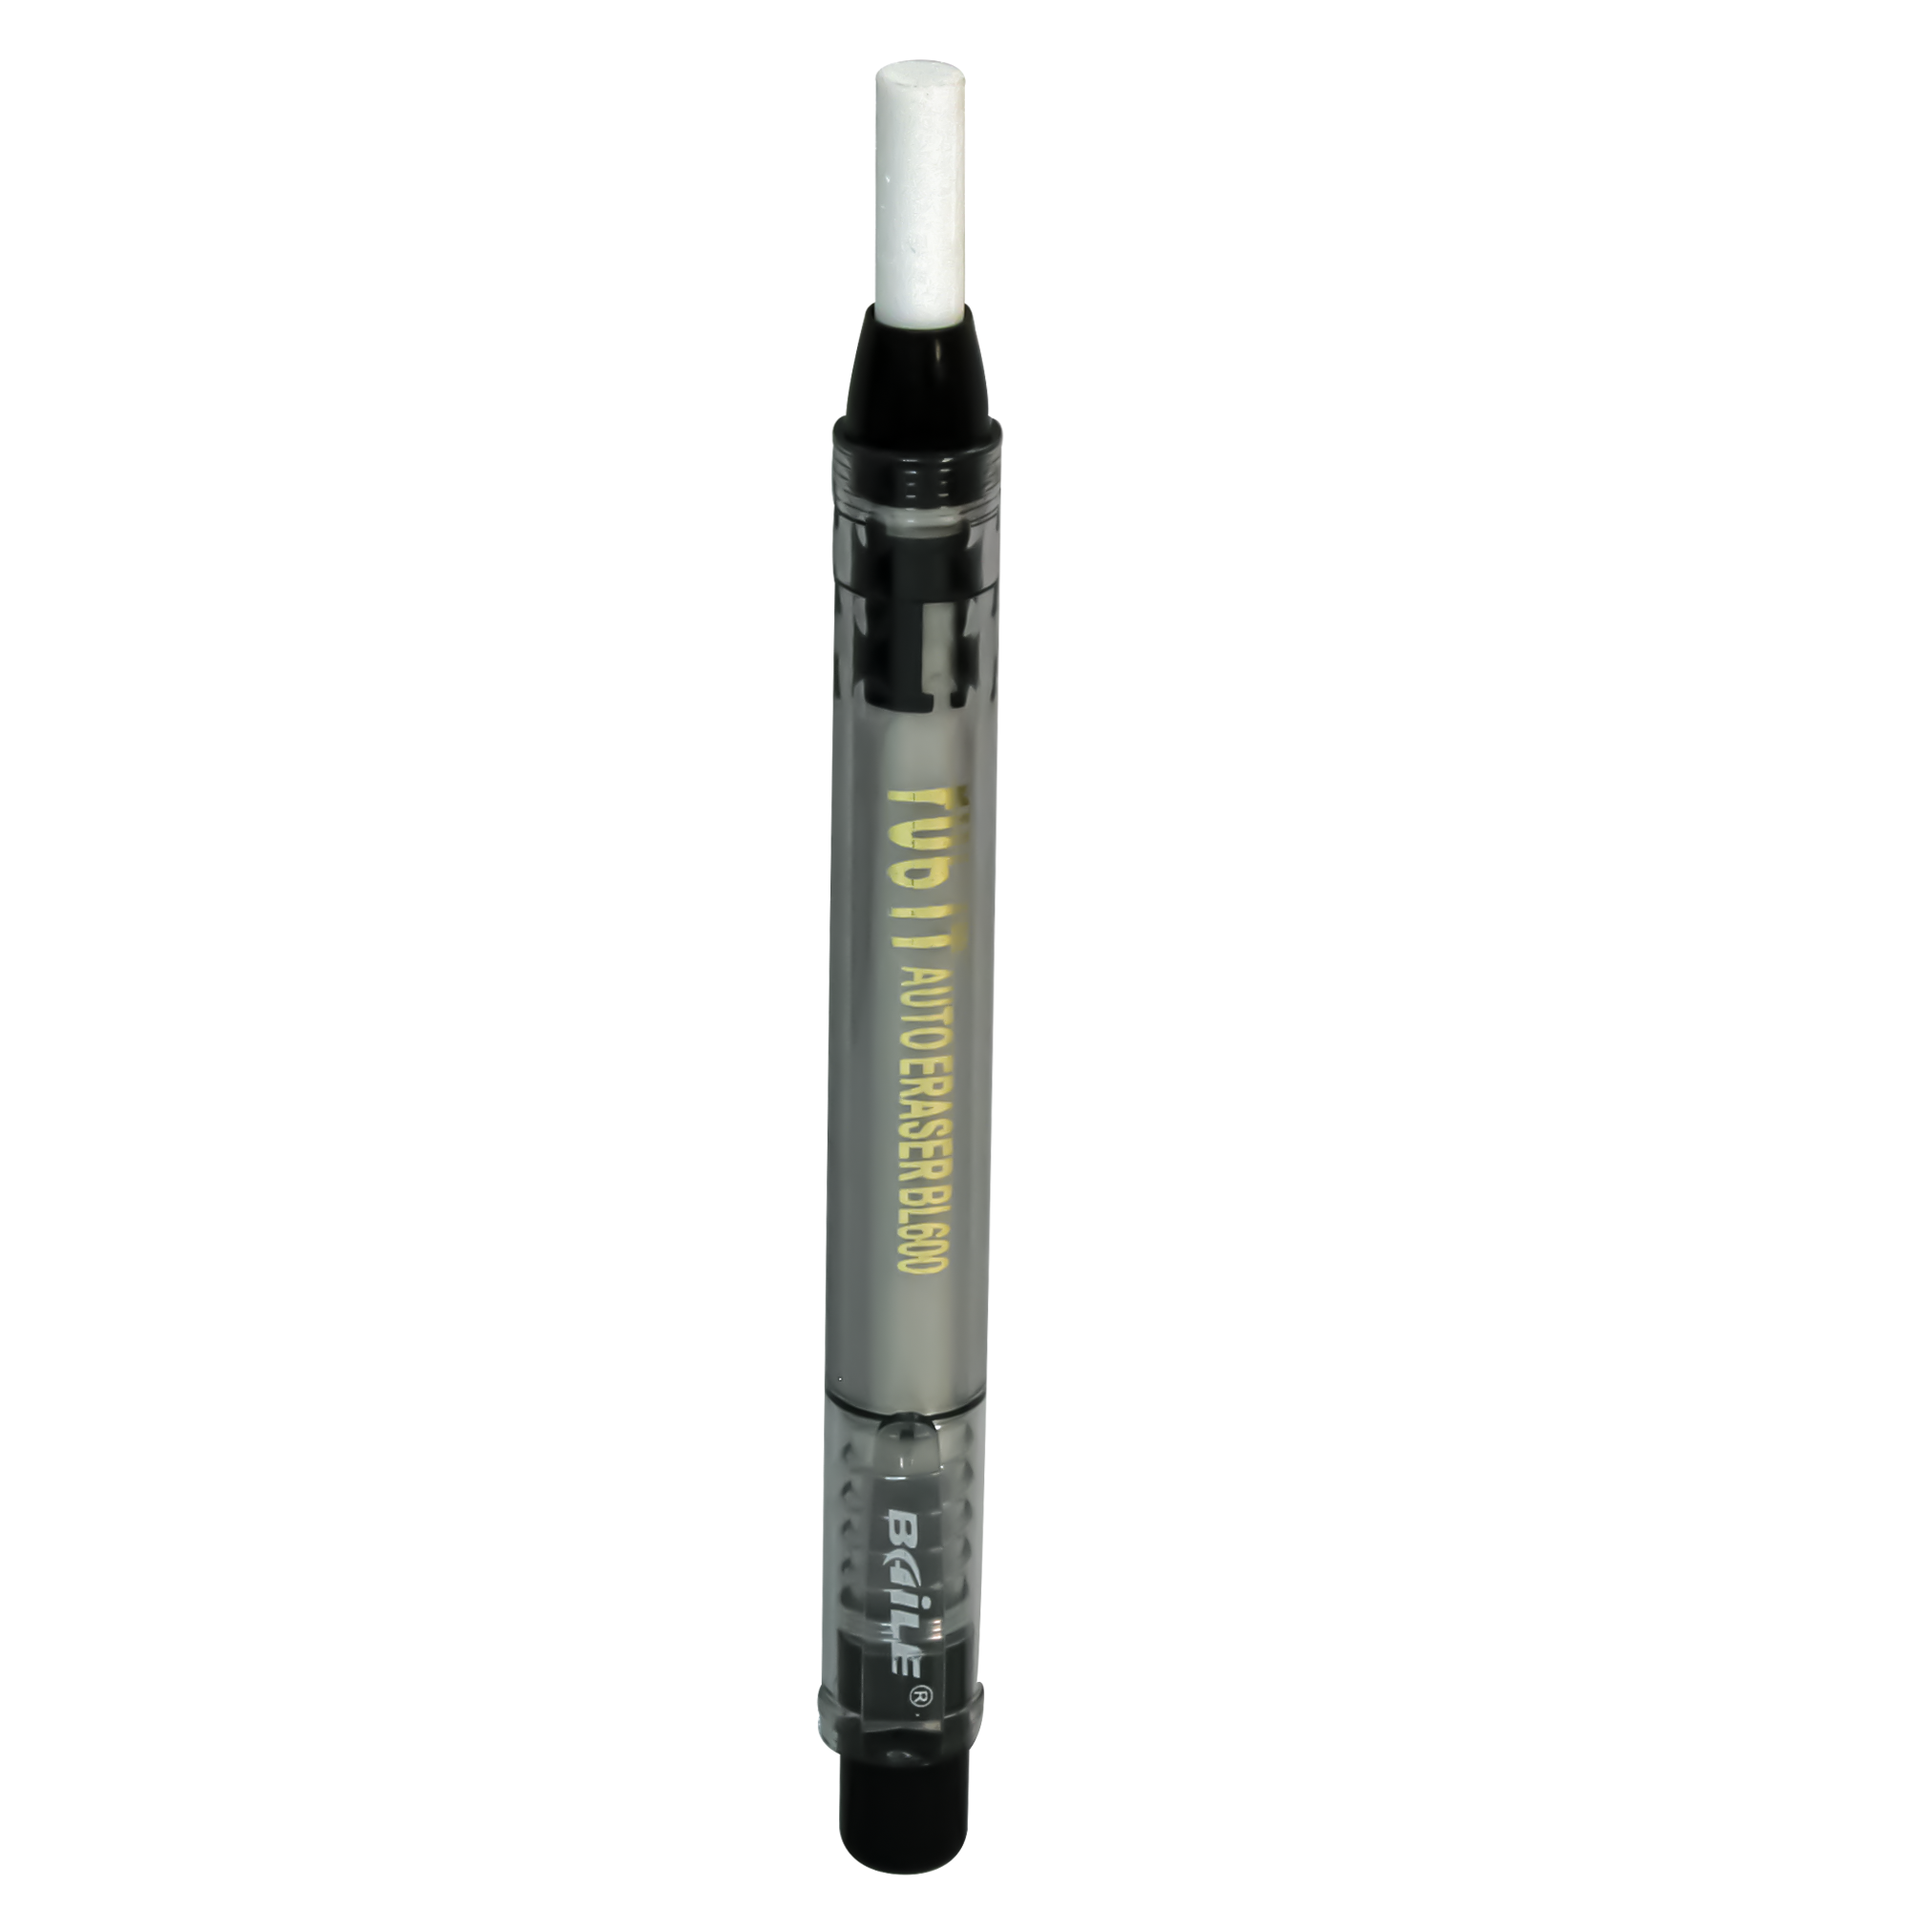 Baile Auto Mechanical Eraser Pencil - 1 pcs